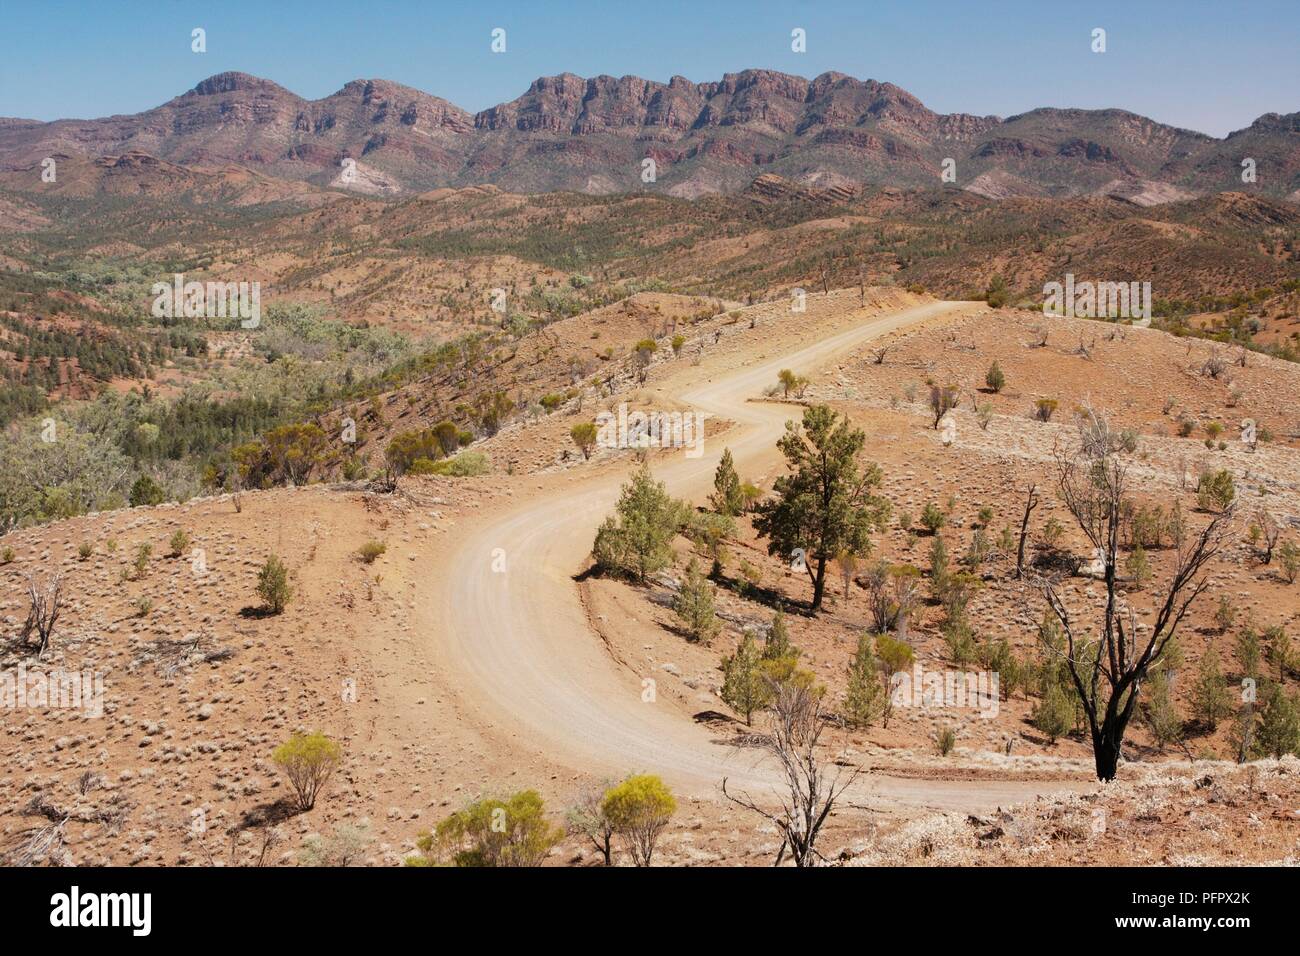 Australien, Flinders Ranges, Straße, Wicklung durch aride Terrain mit Mountain rage im Hintergrund Stockfoto